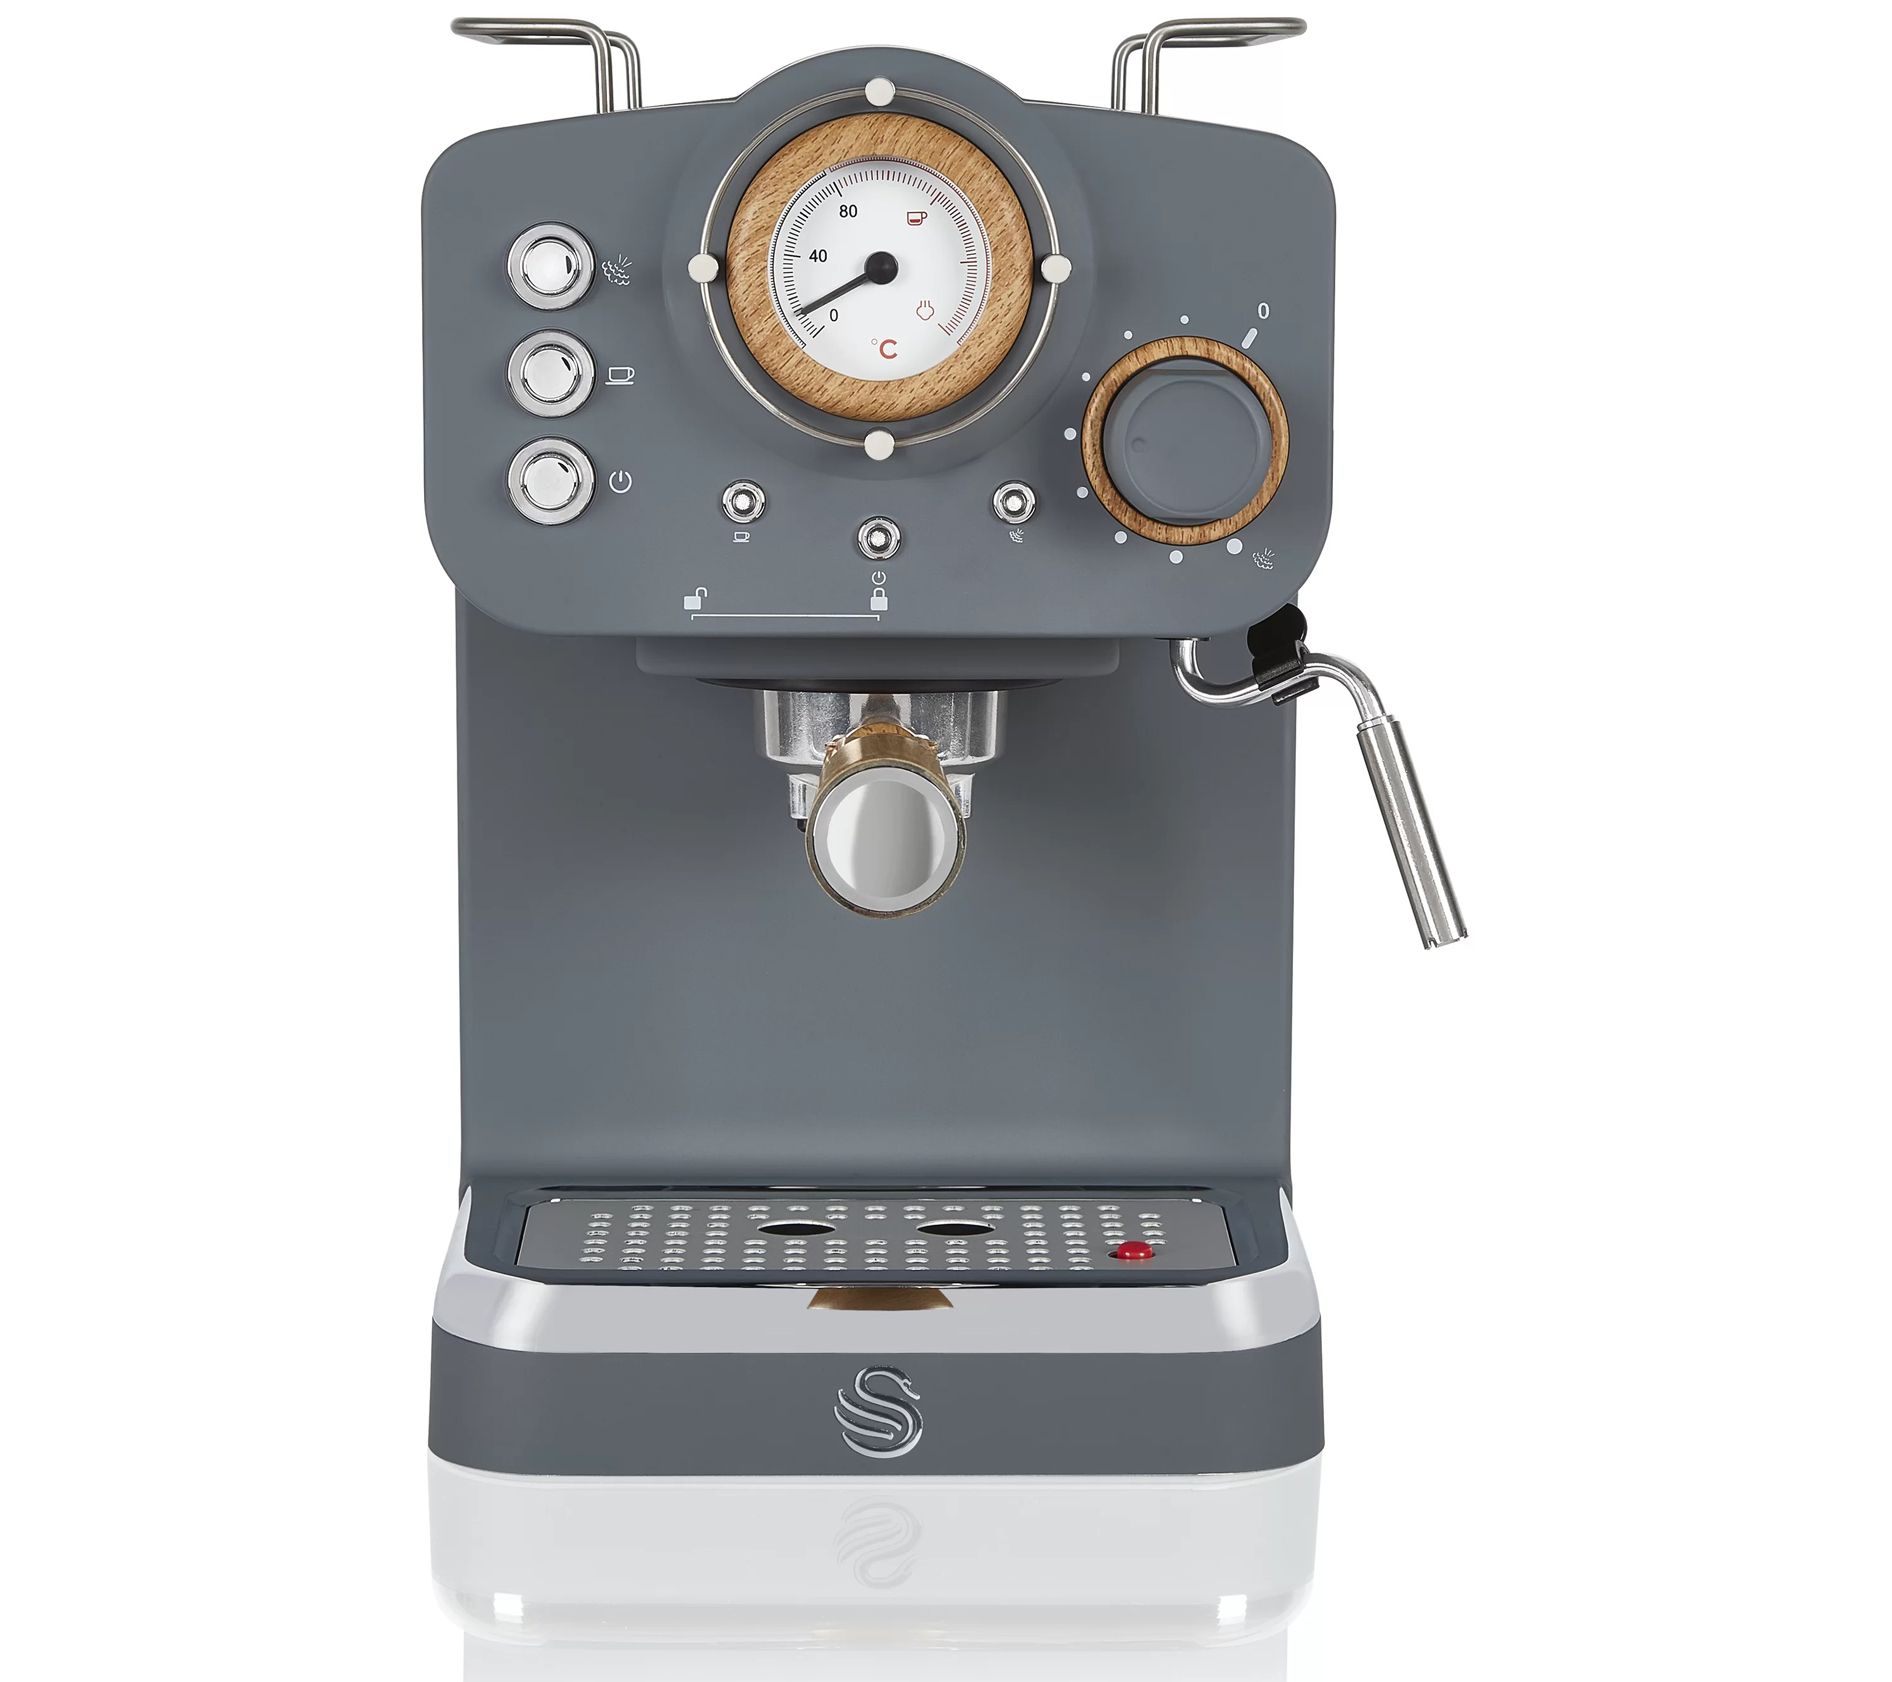 Combination Espresso And Coffee Maker Espressione : Target